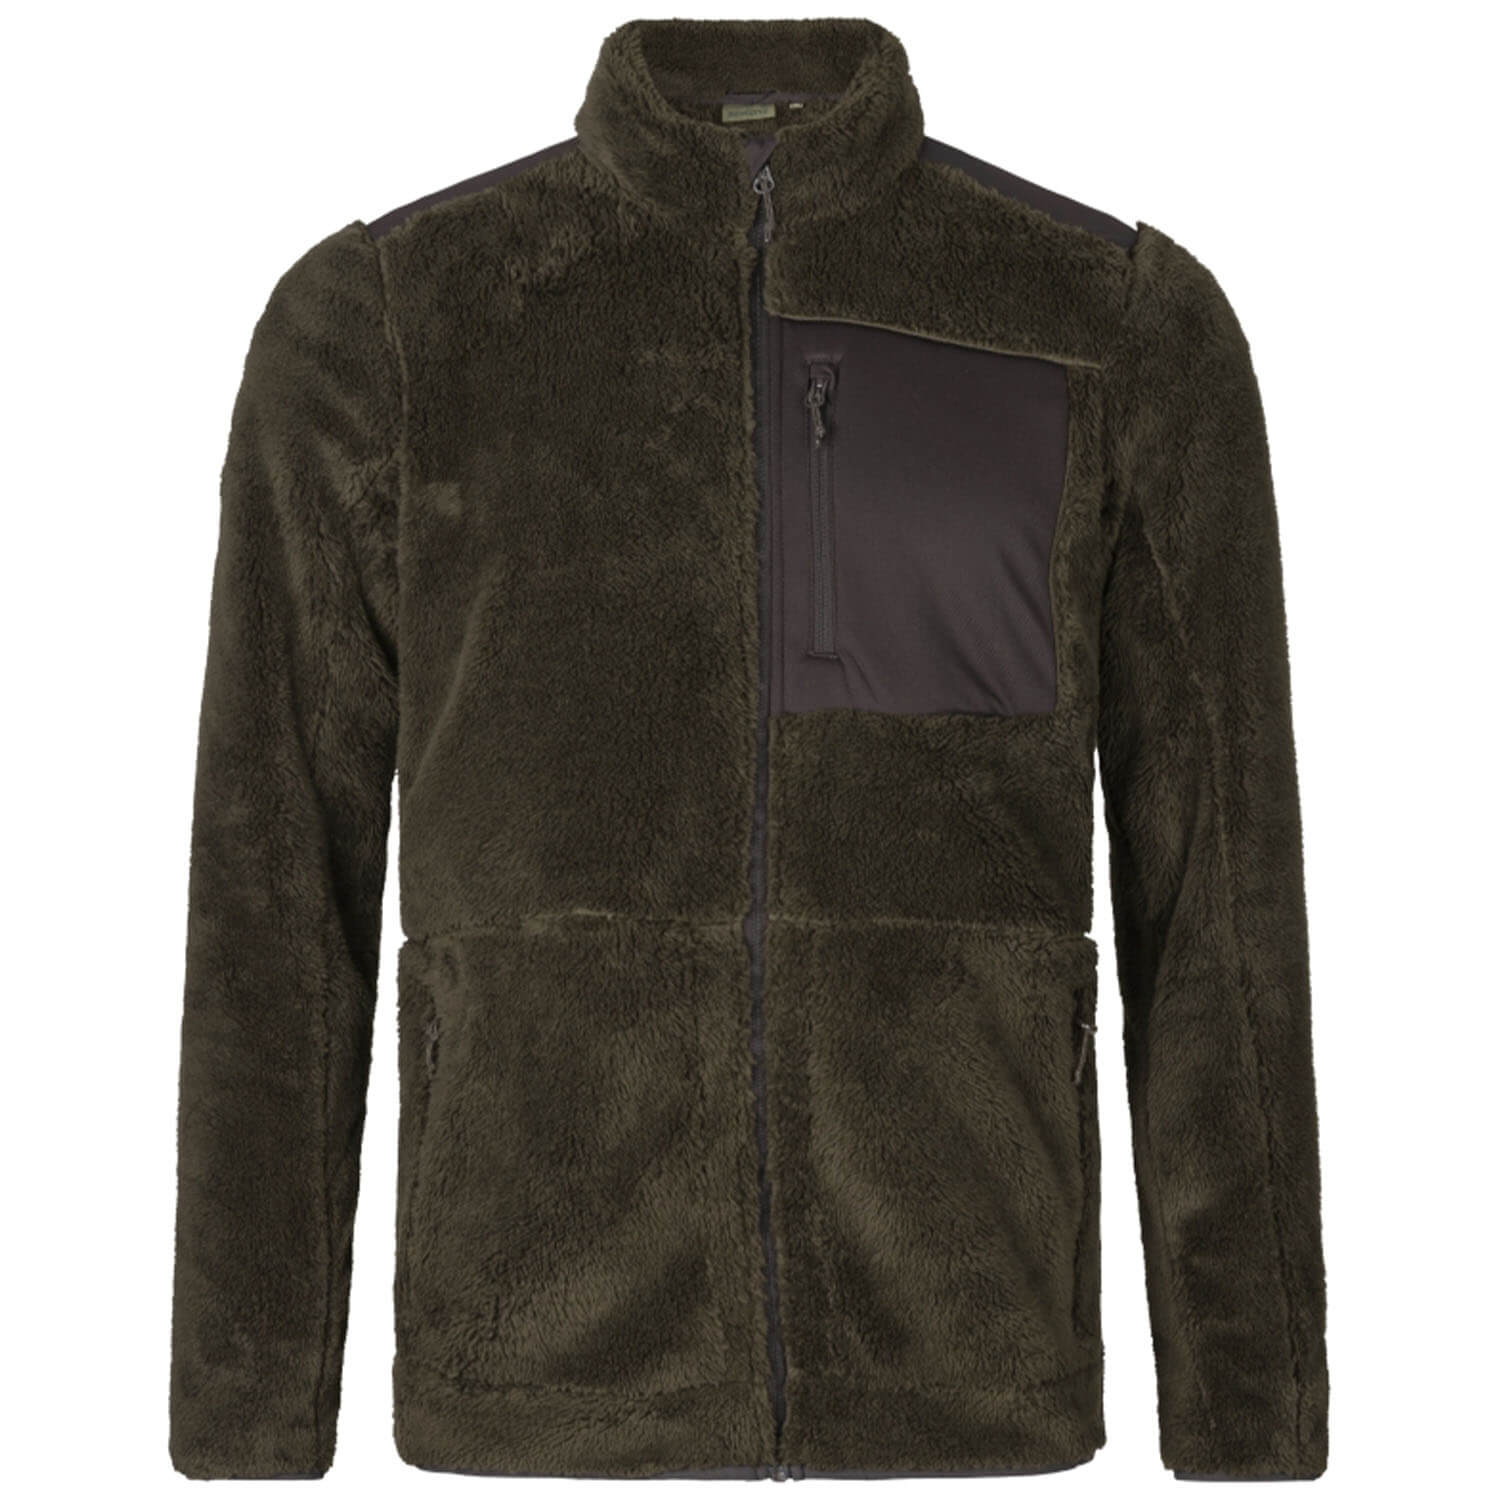 Seeland Fleece Jacket Noah - Sweaters & Jerseys